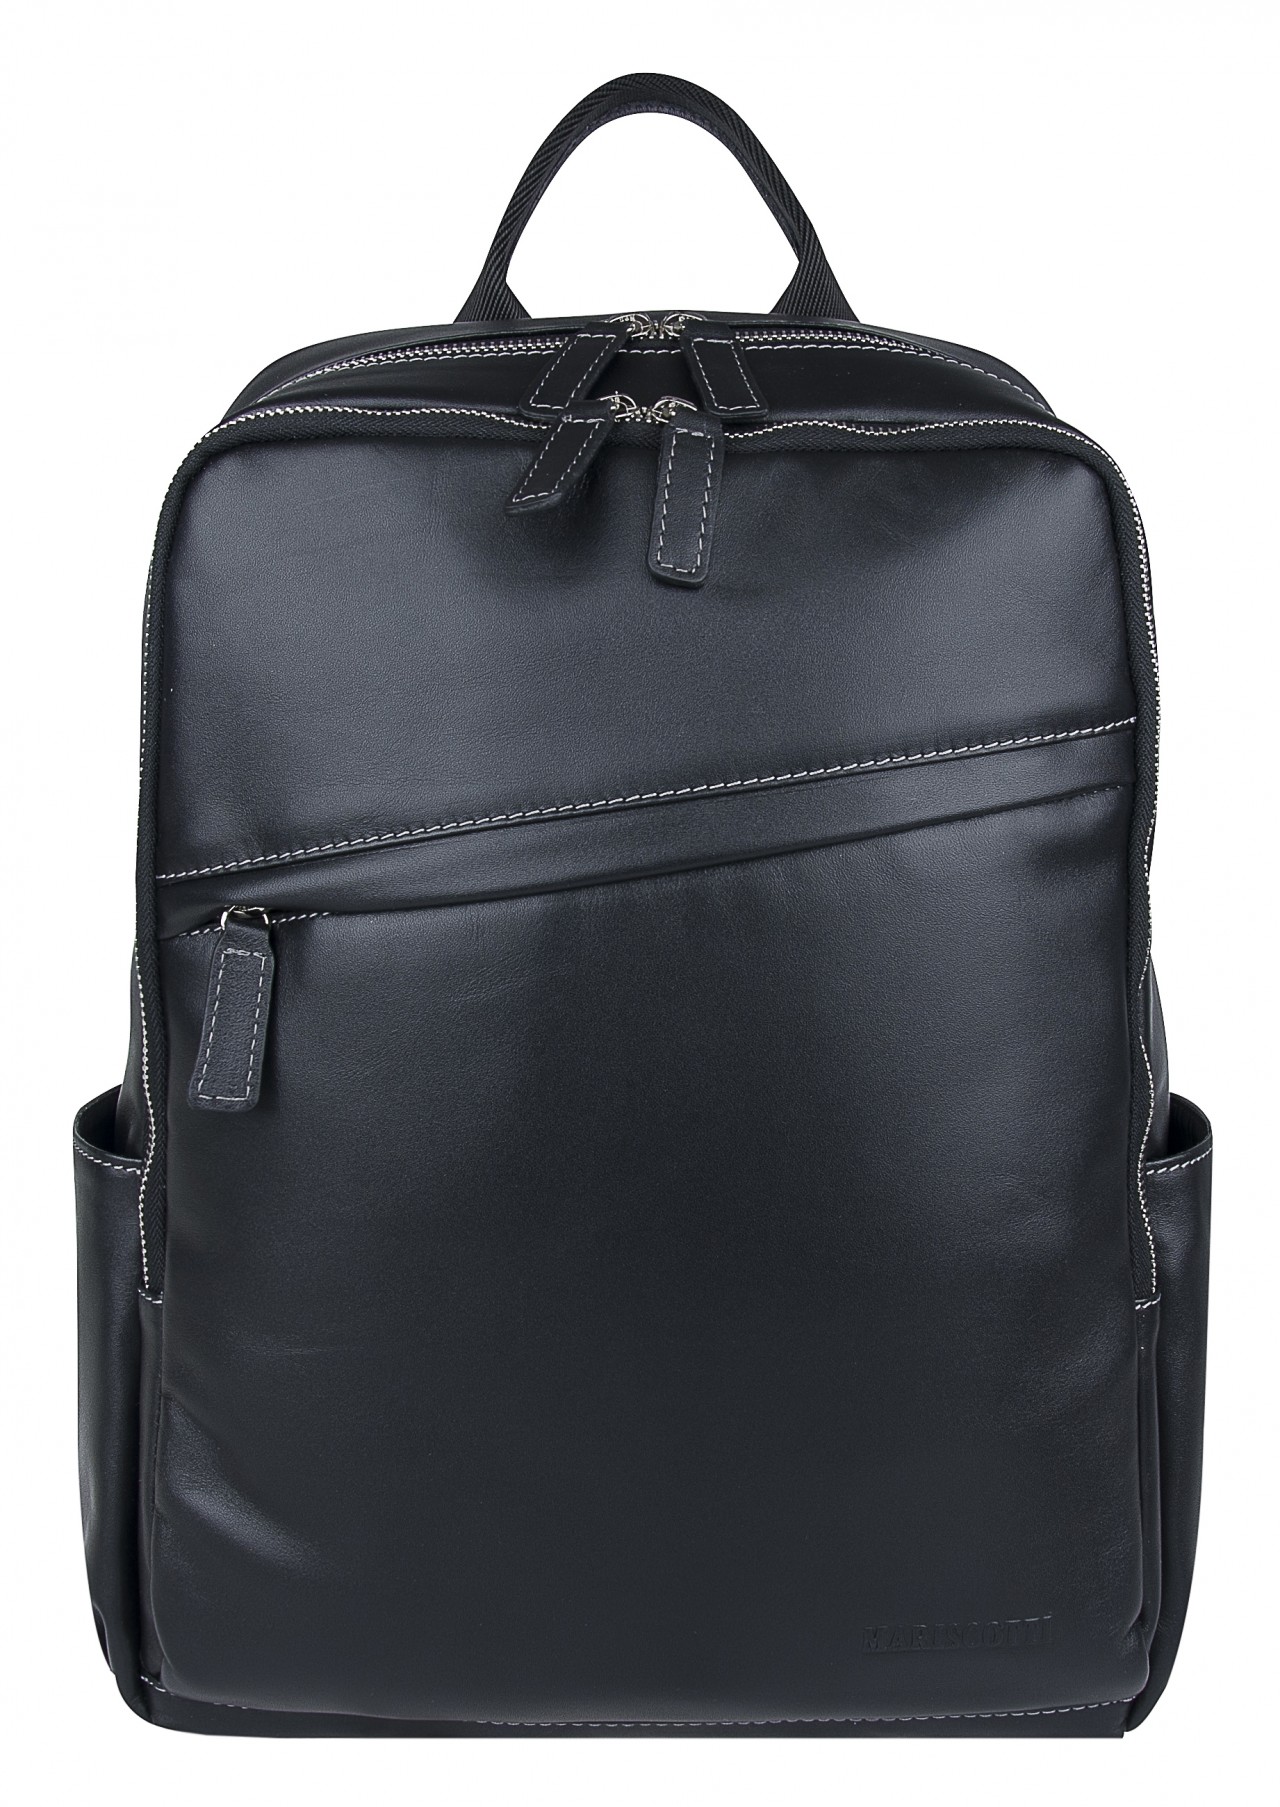 Рюкзак унисекс Franchesco Mariscotti 2-717к каталония черный, 40х29х13 см